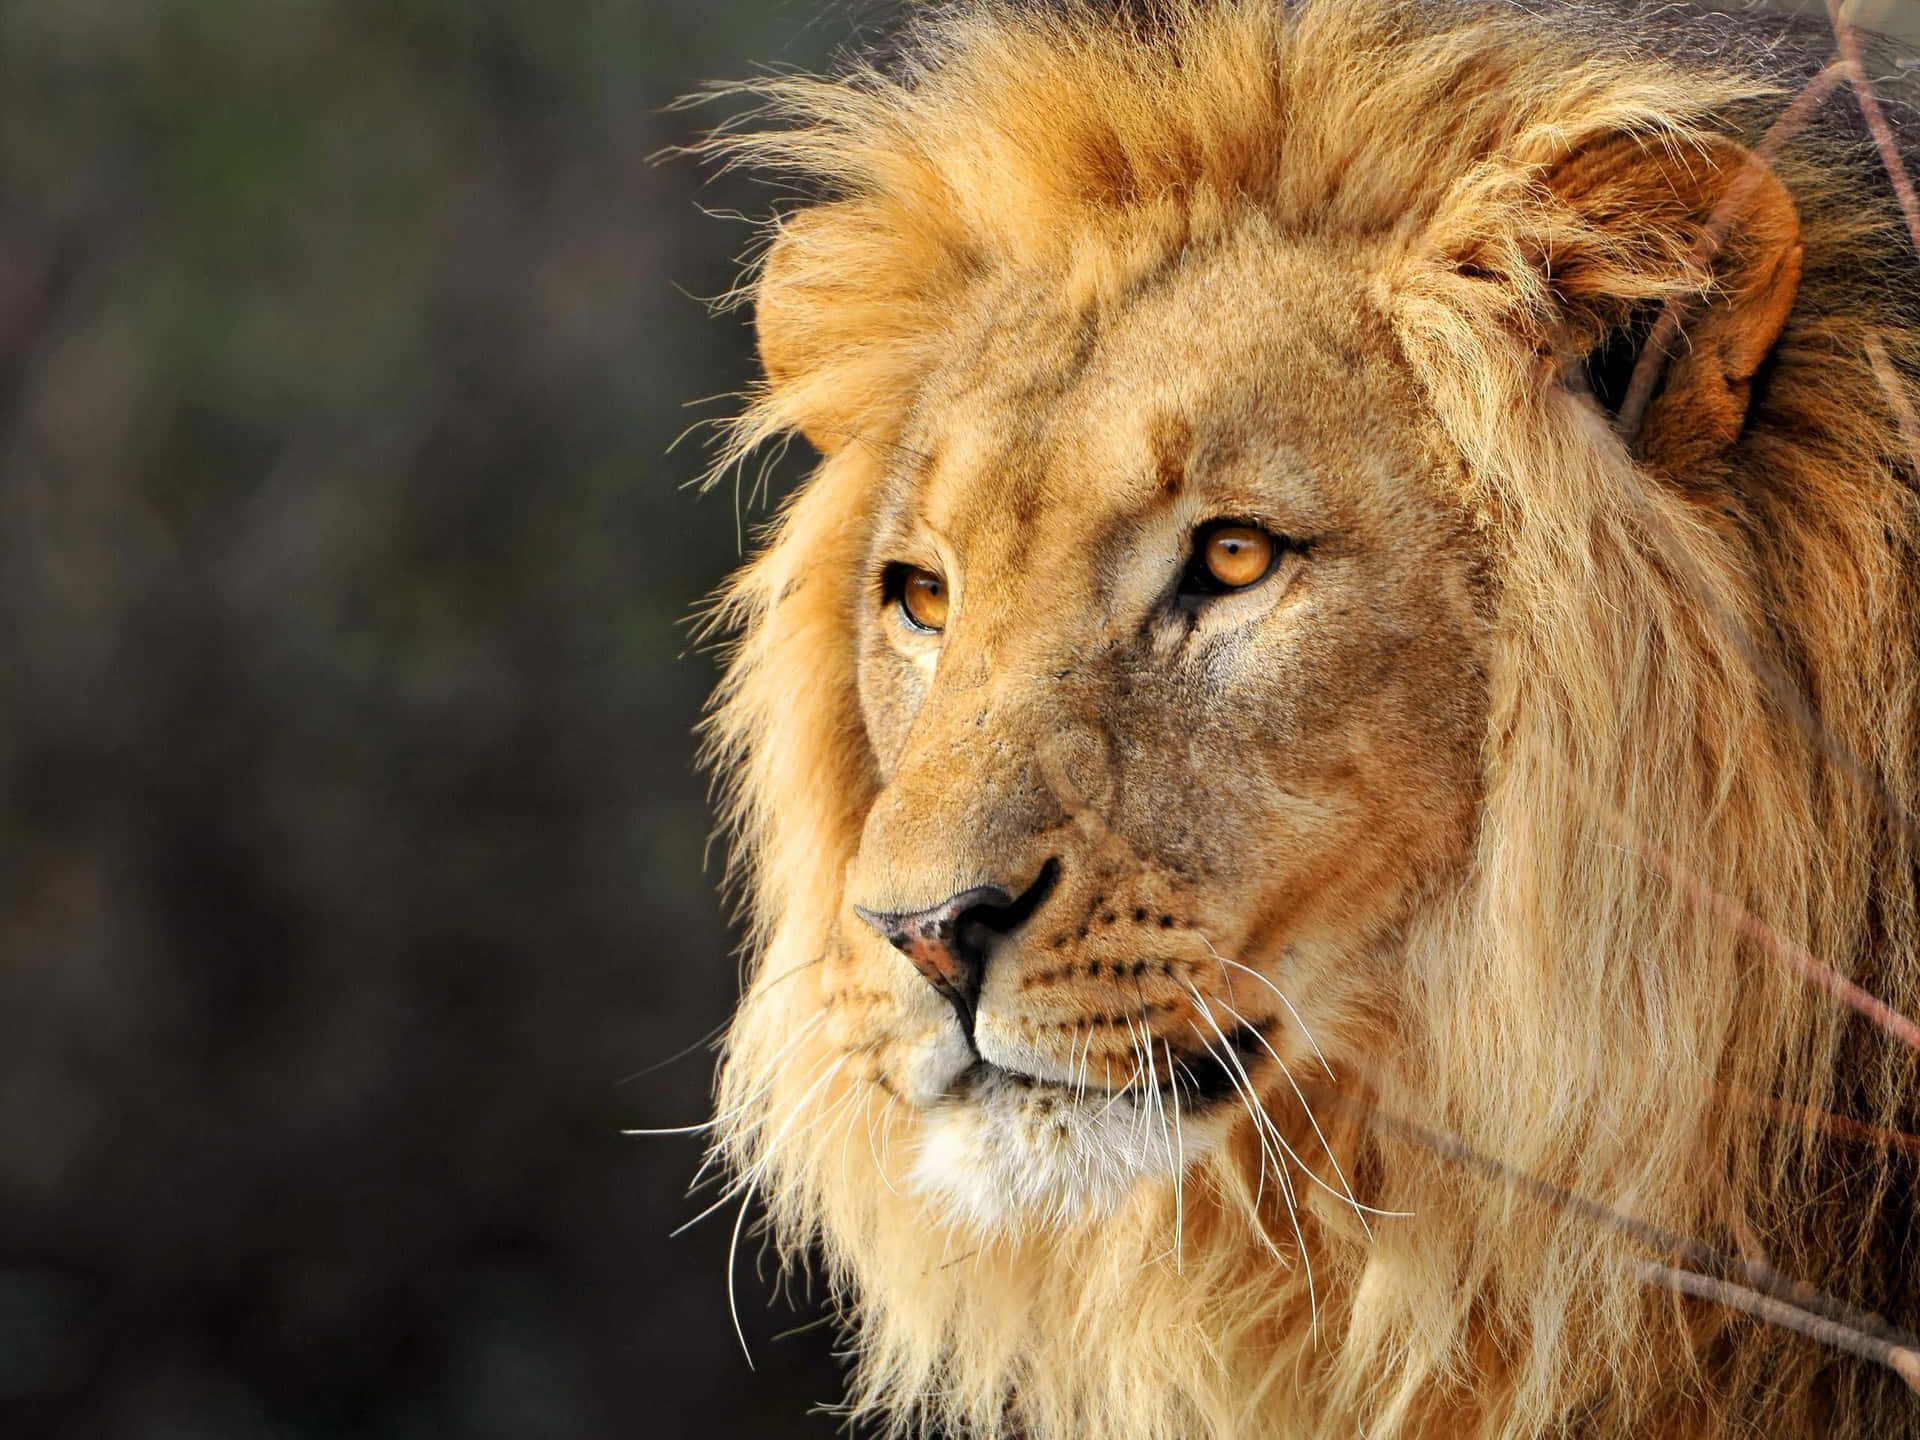 Powerful lion face against a black backdrop.